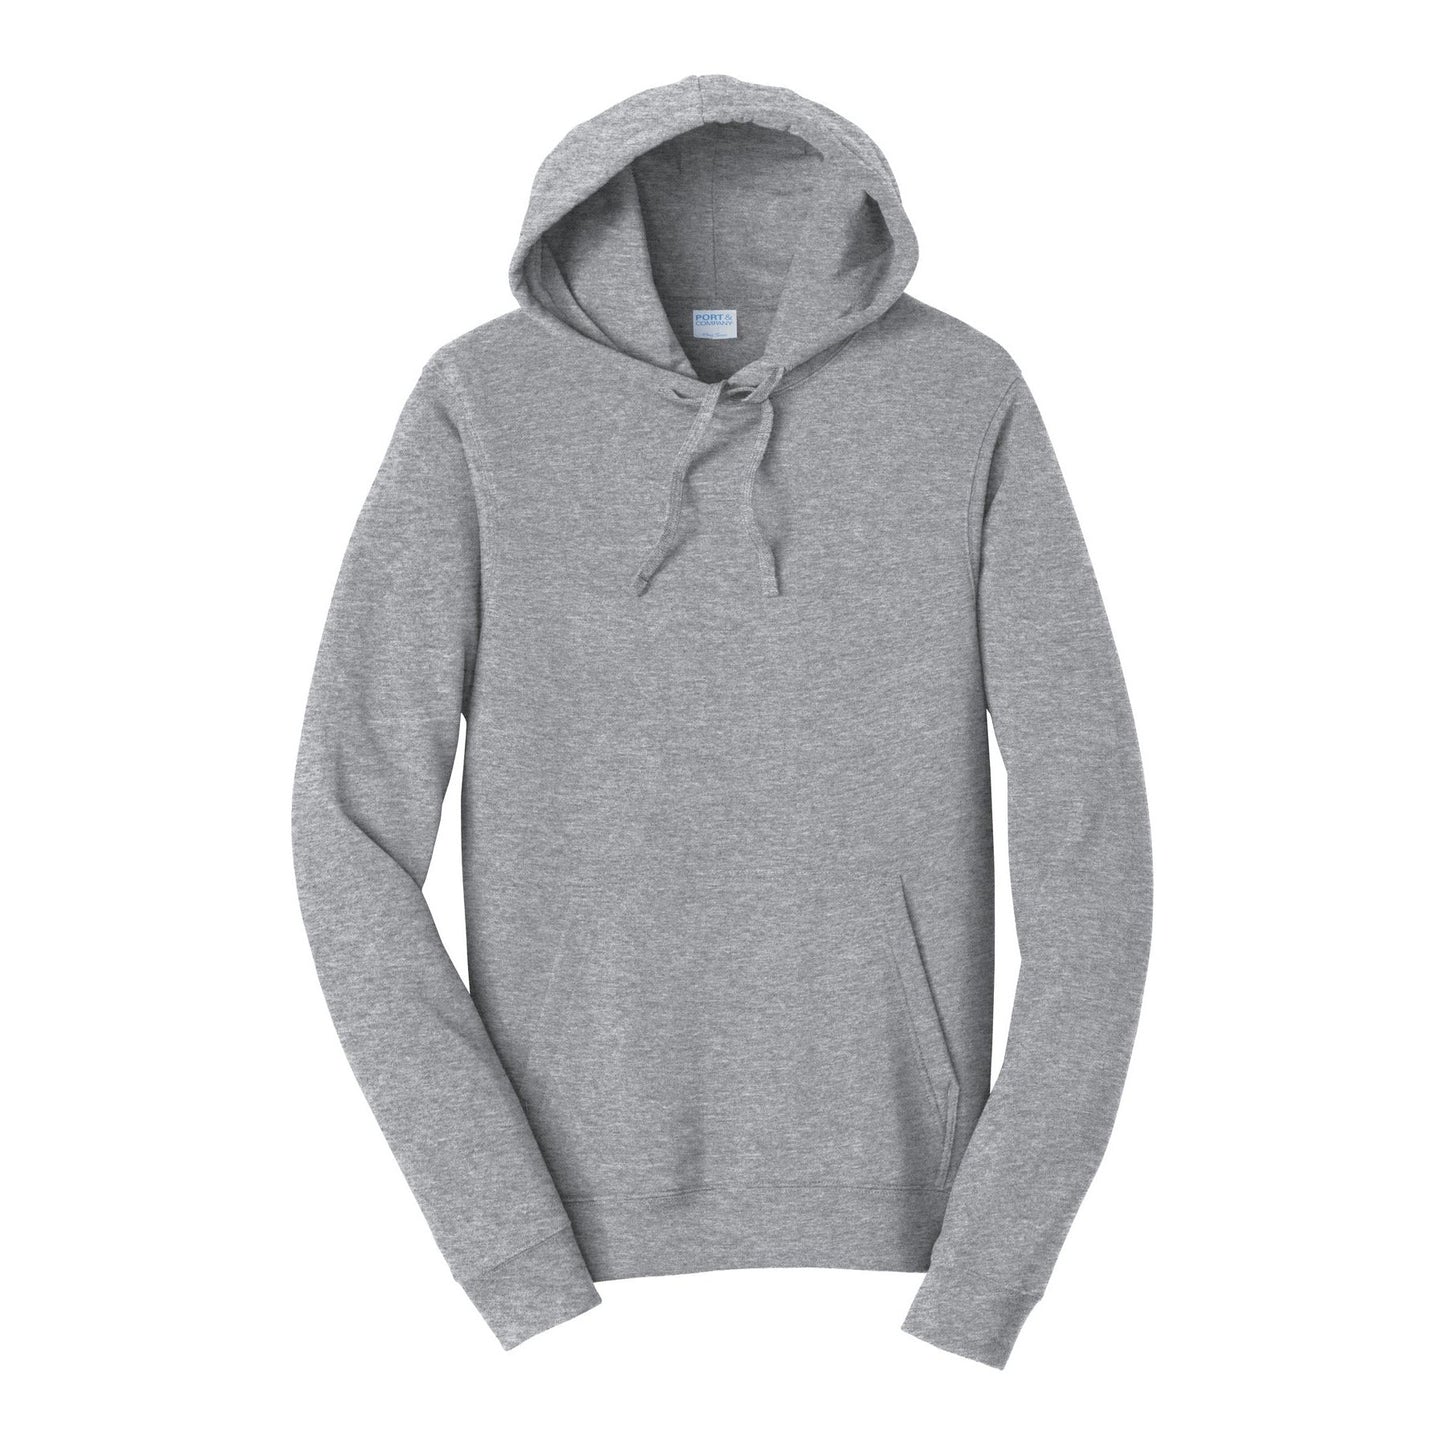 Port & Company Fan Favorite Fleece Pullover Hooded Sweatshirt